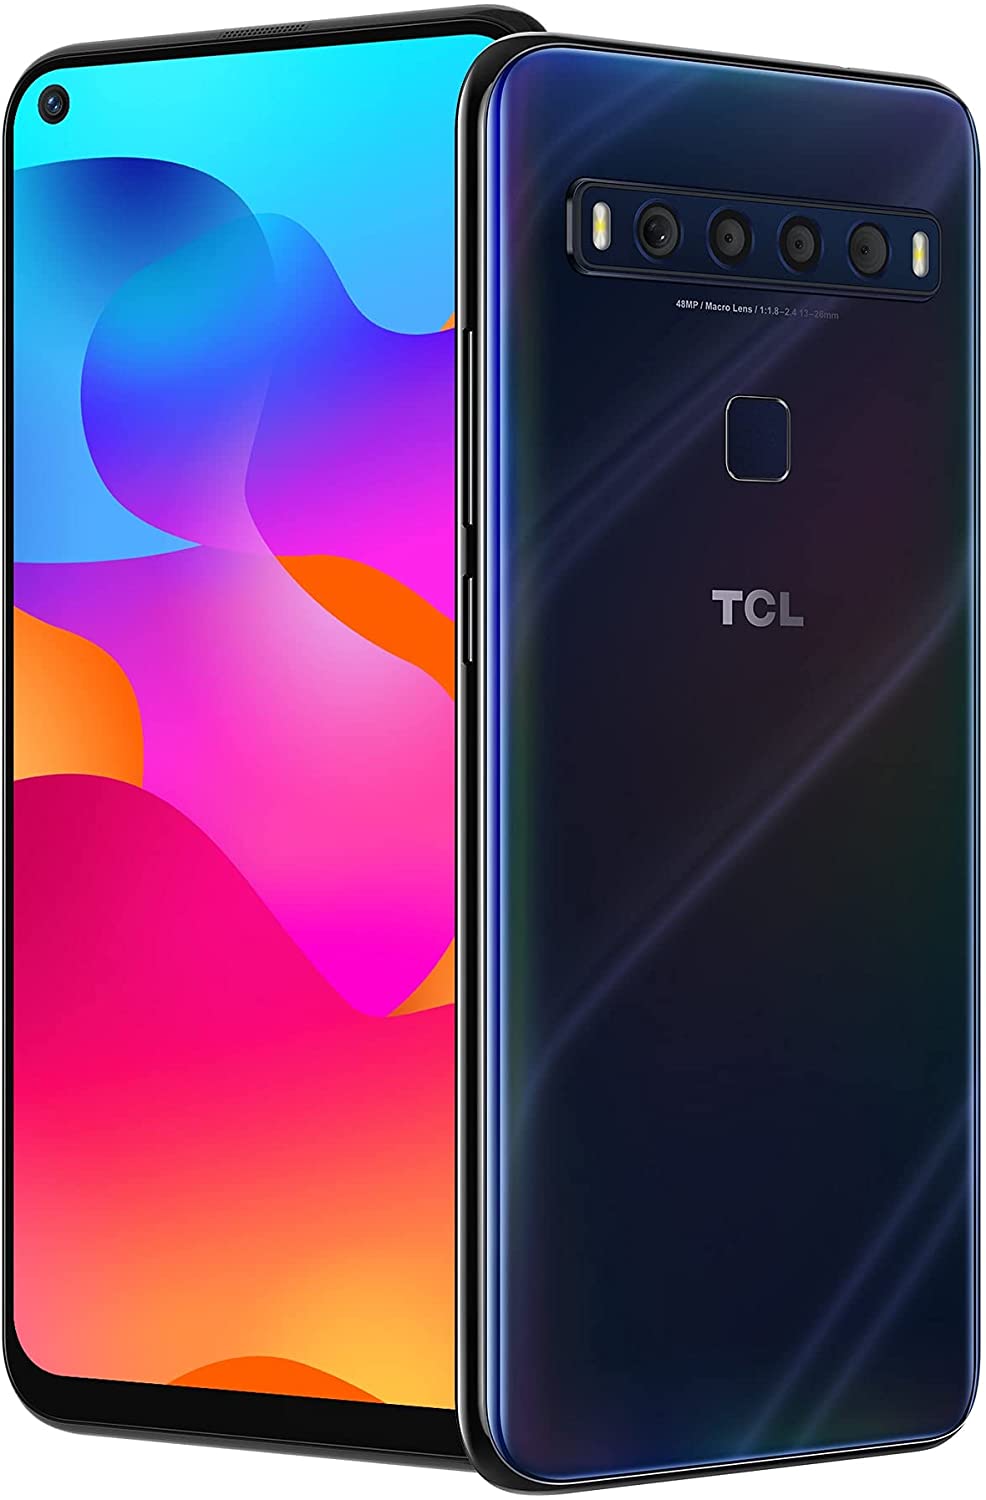 TCL 10L T770B 64GB Smartphone desbloqueado (caja abierta) - Azul Mariana